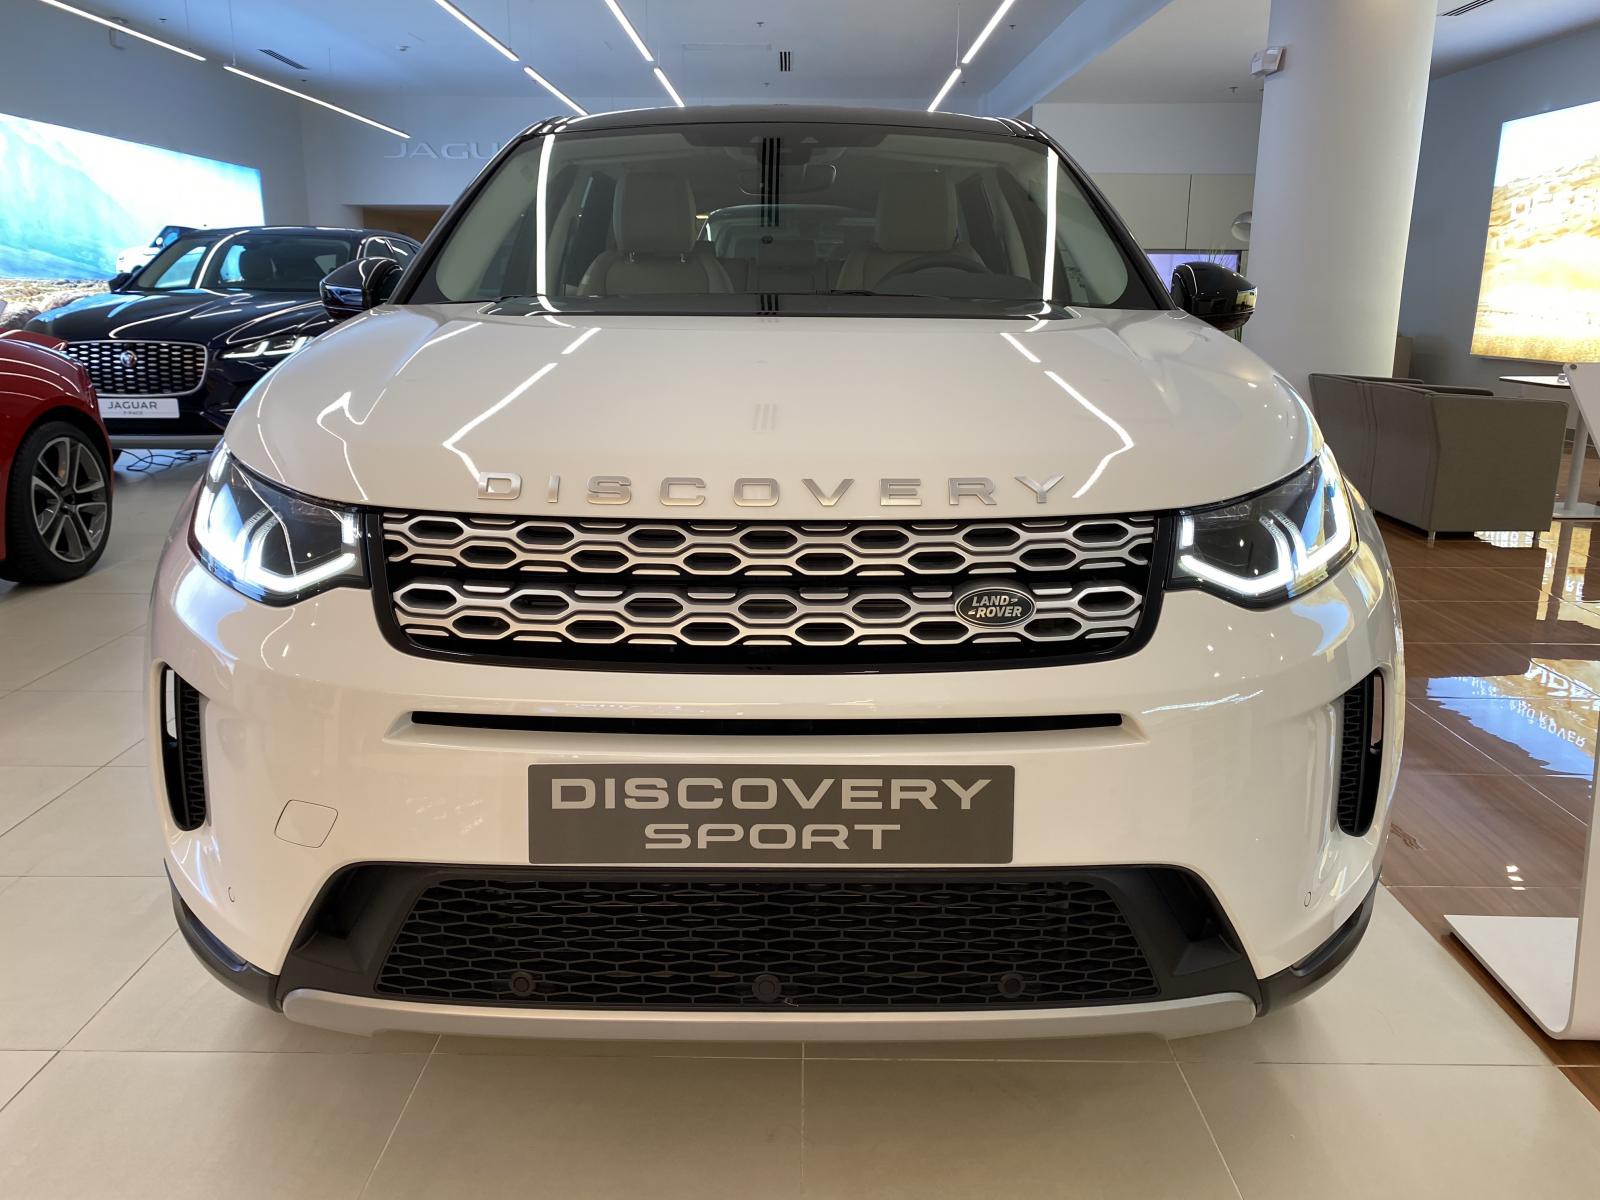 Bán xe Discovery Sport 7 chỗ nhập khẩu chính hãng siêu rộng rãi giá tốt